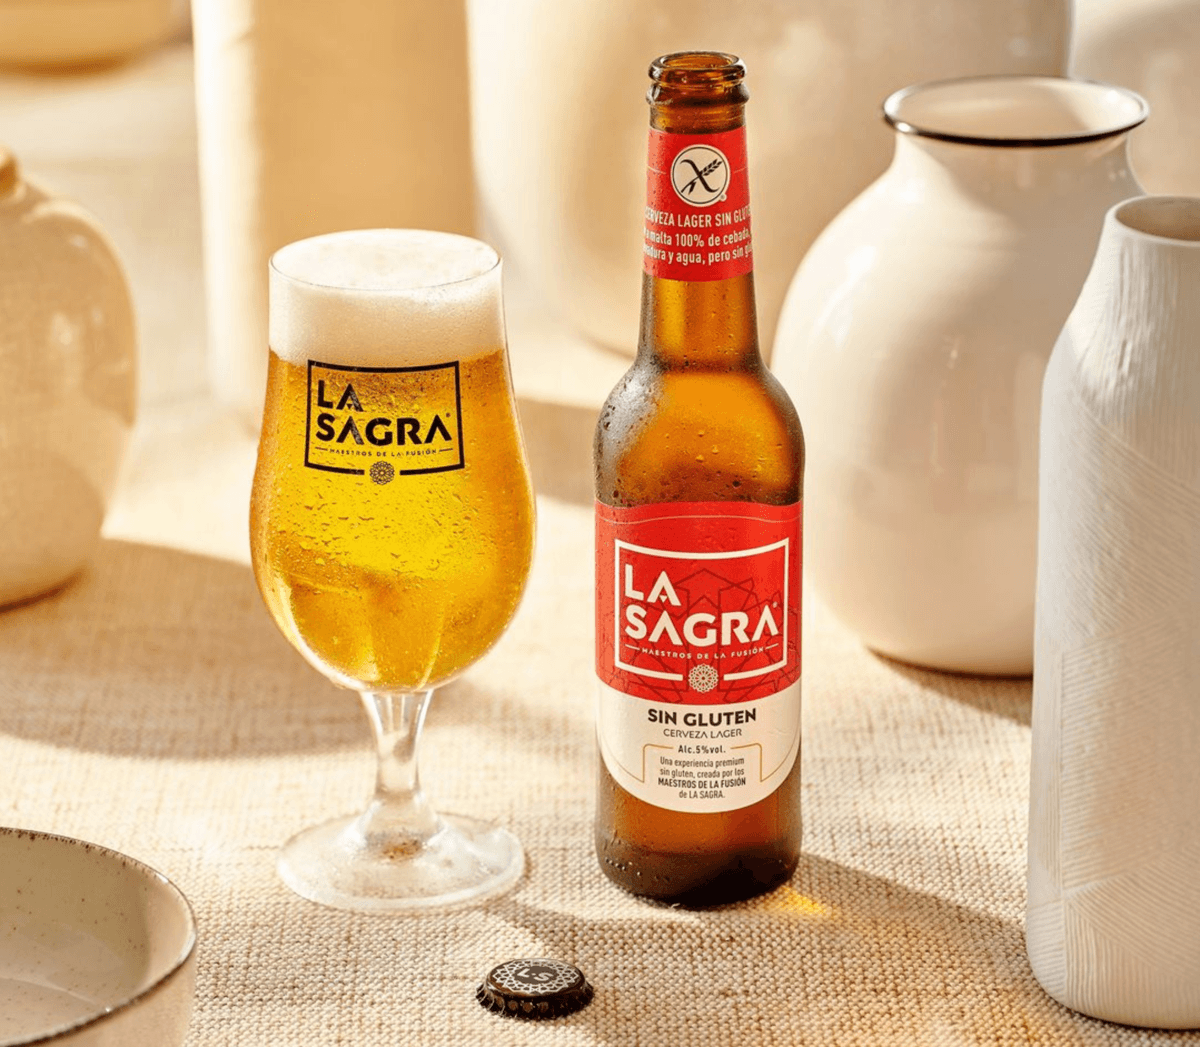 Una cerveza española entre las mejores del mundo: No es ni Mahou ni Cruzcampo - La Sagra Toledo